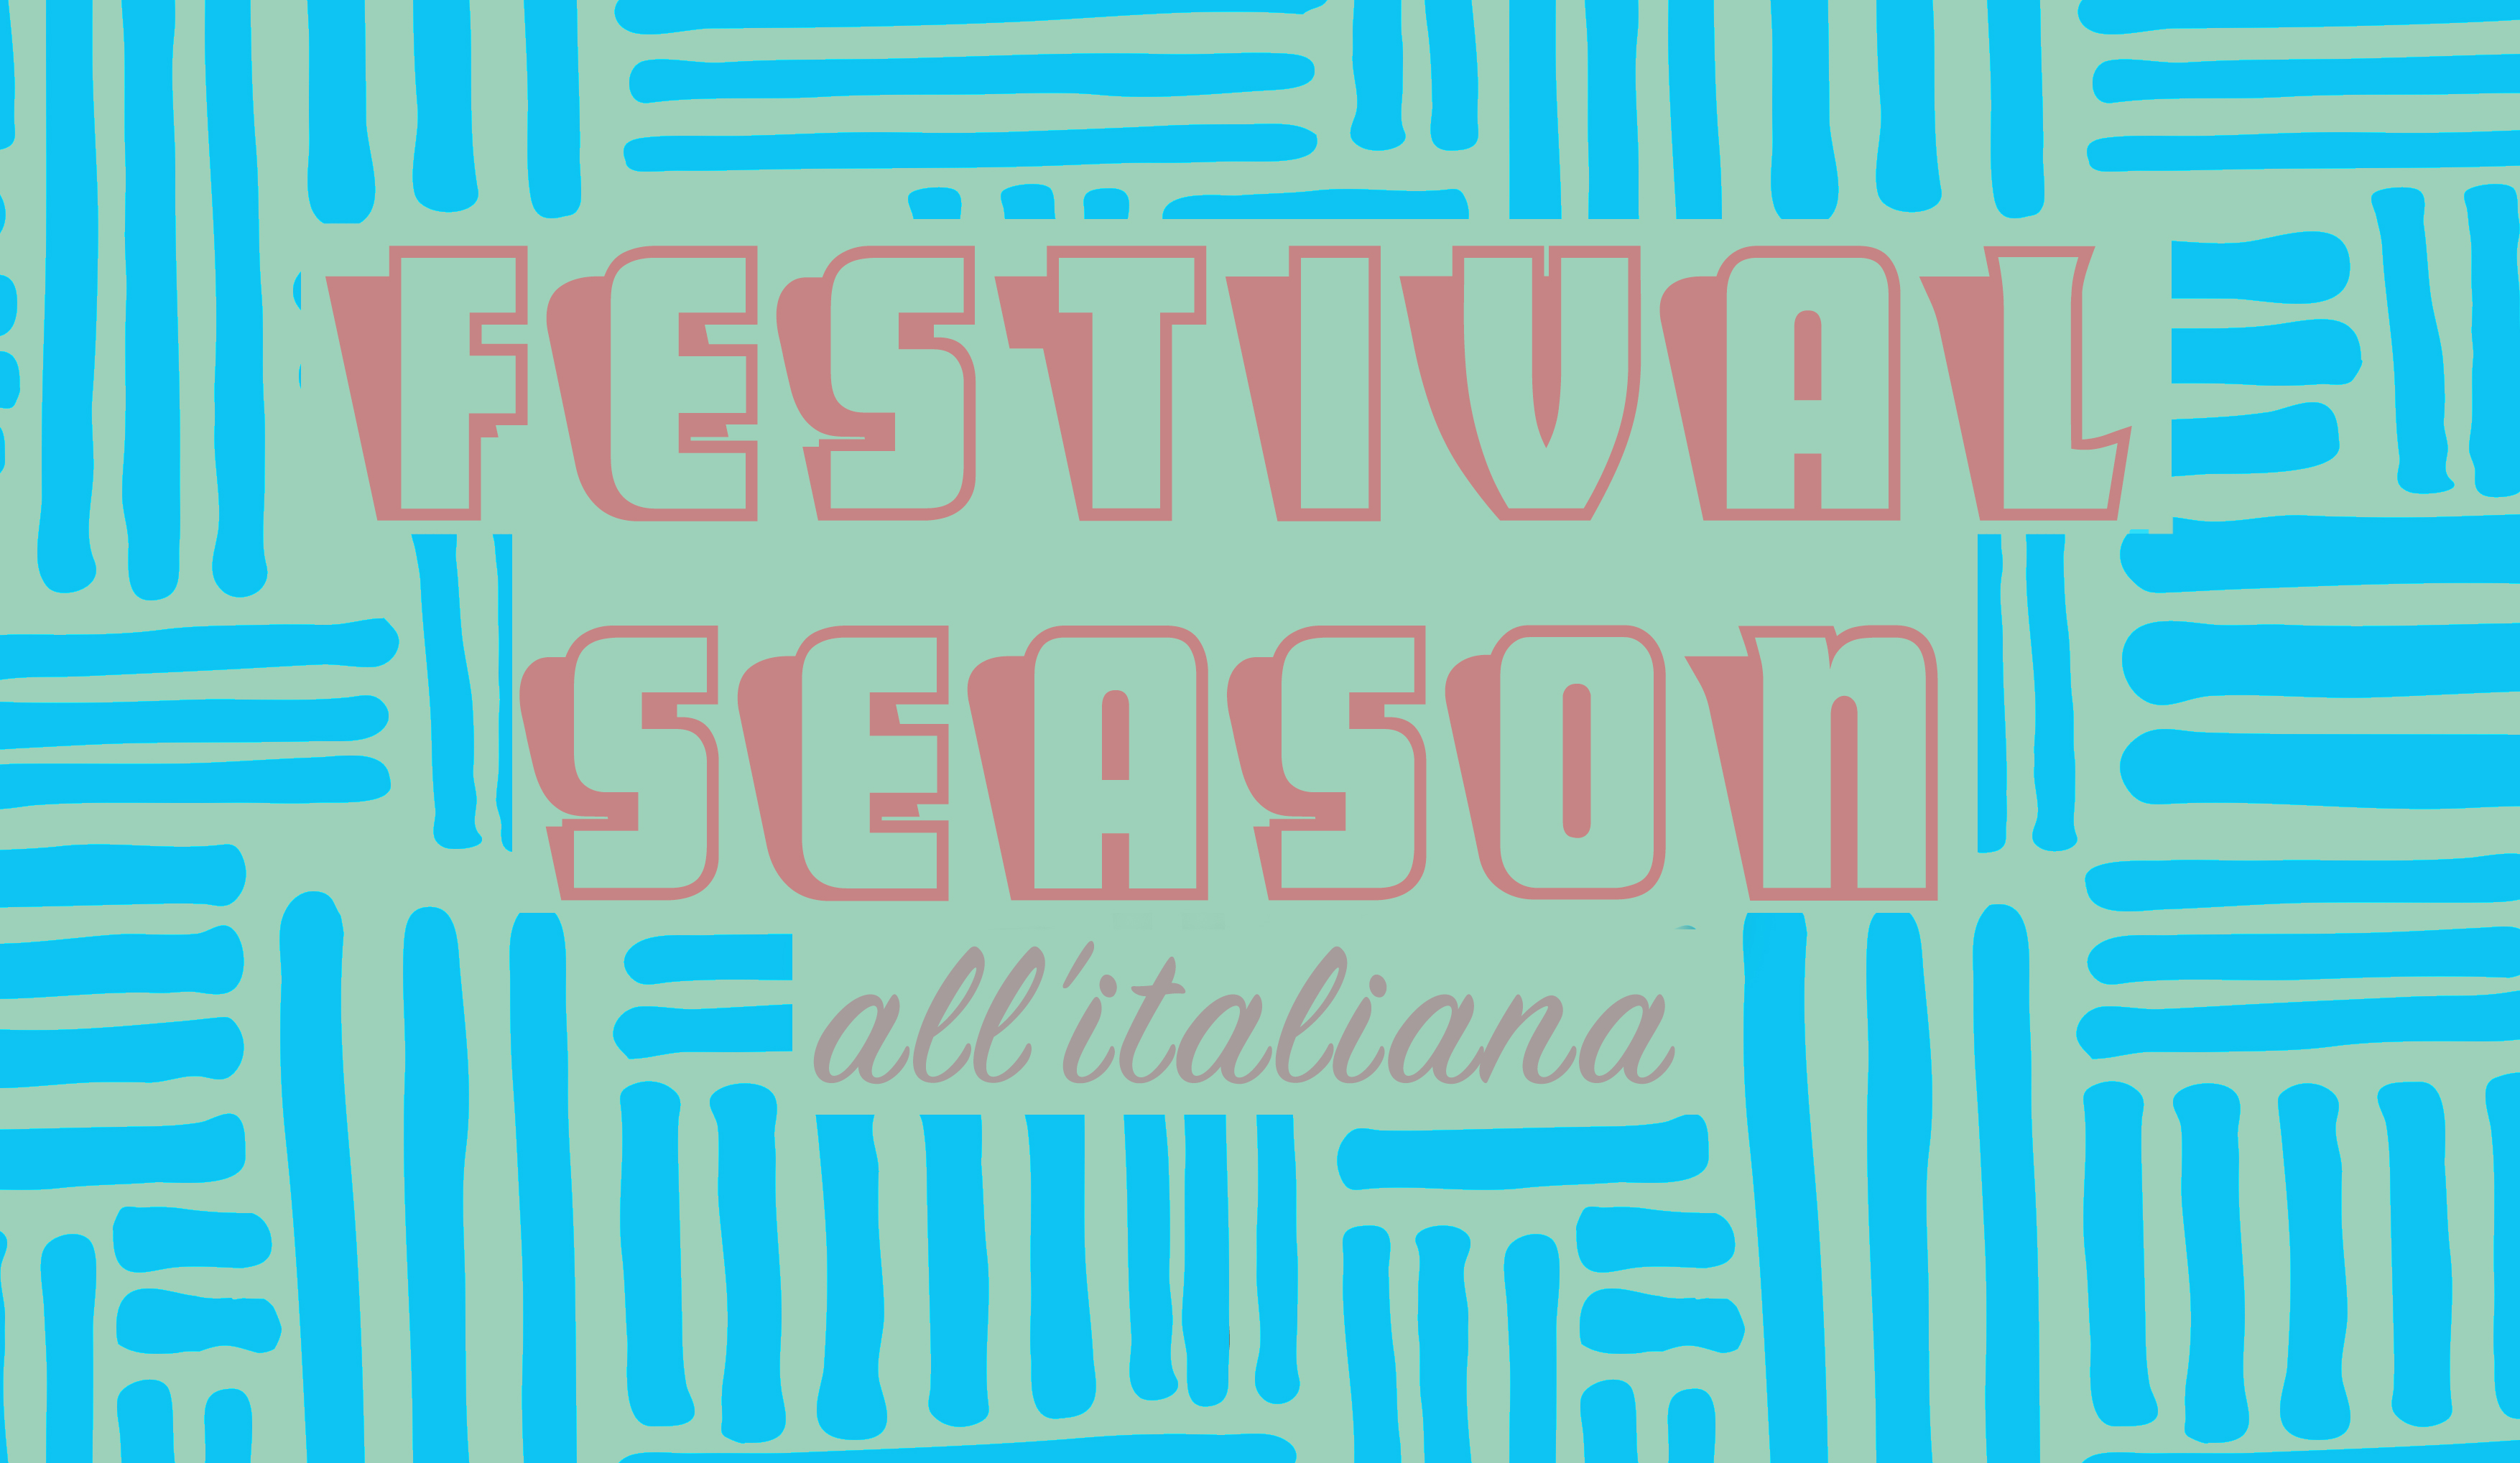 Festival Season all'italiana | blog.studentsville.it